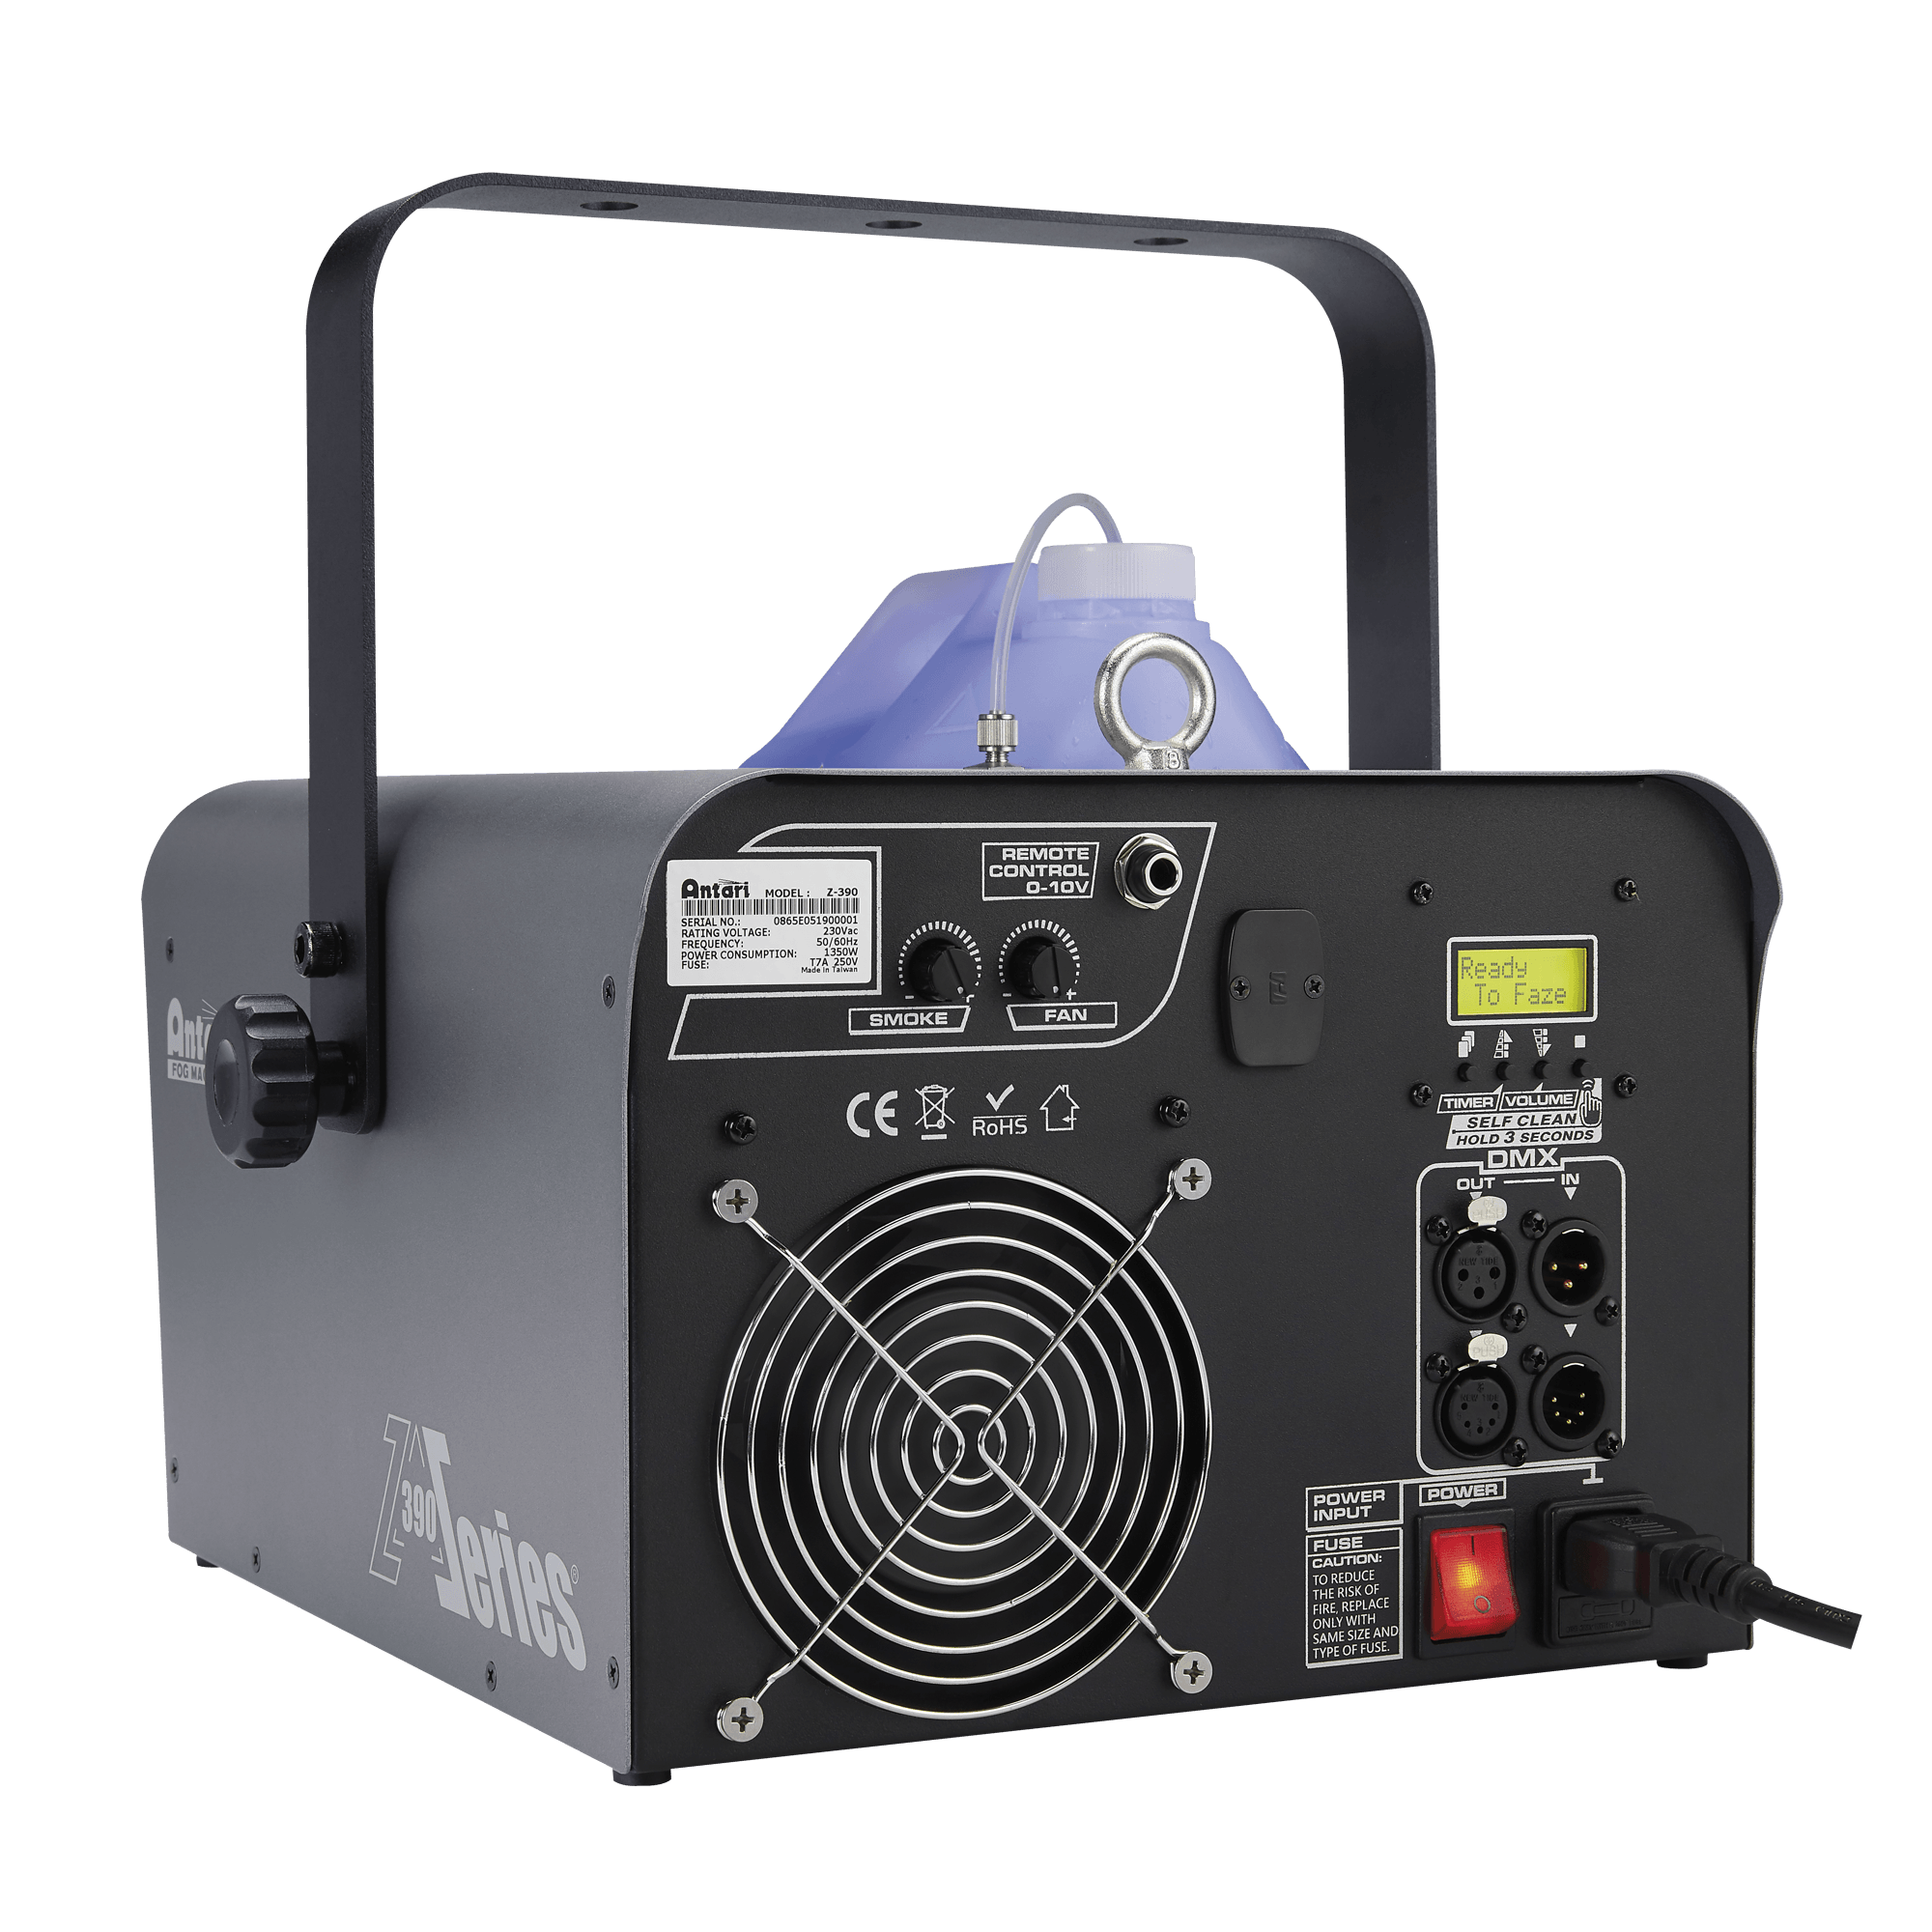 Antari Z-390R Fazer 1500 W Fazer with Wireless DMX - DY Pro Audio